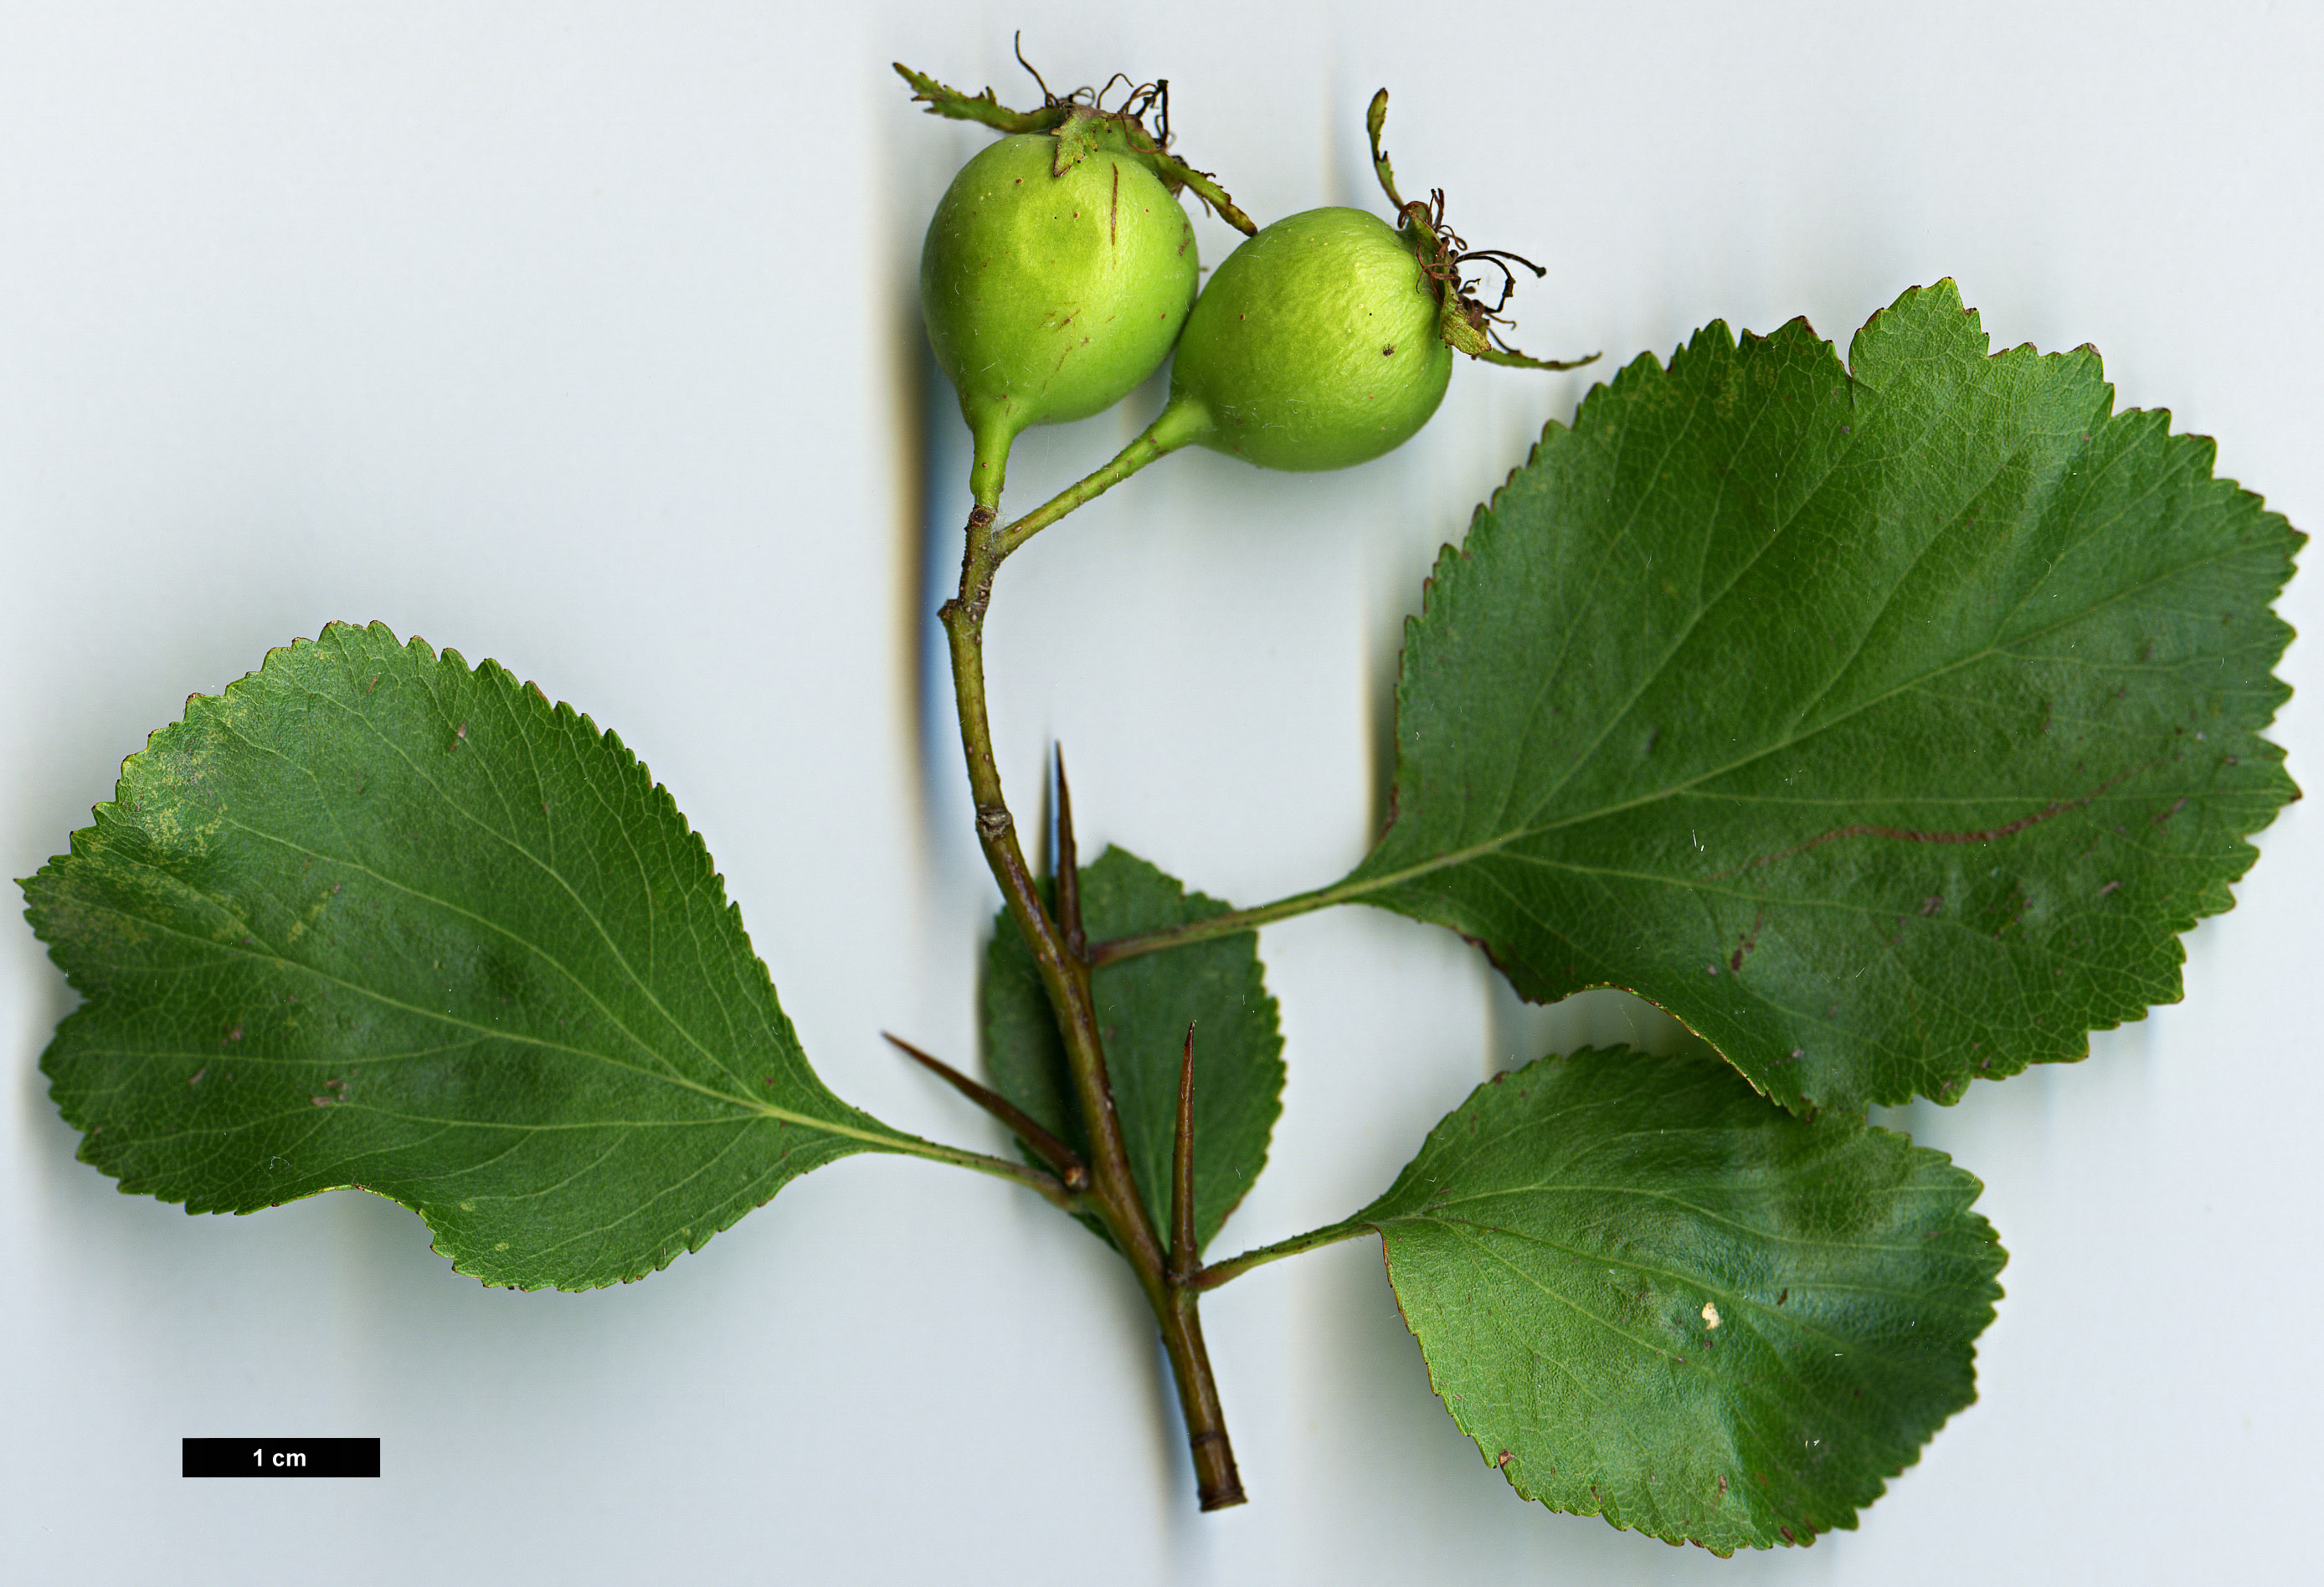 High resolution image: Family: Rosaceae - Genus: Crataegus - Taxon: sororia